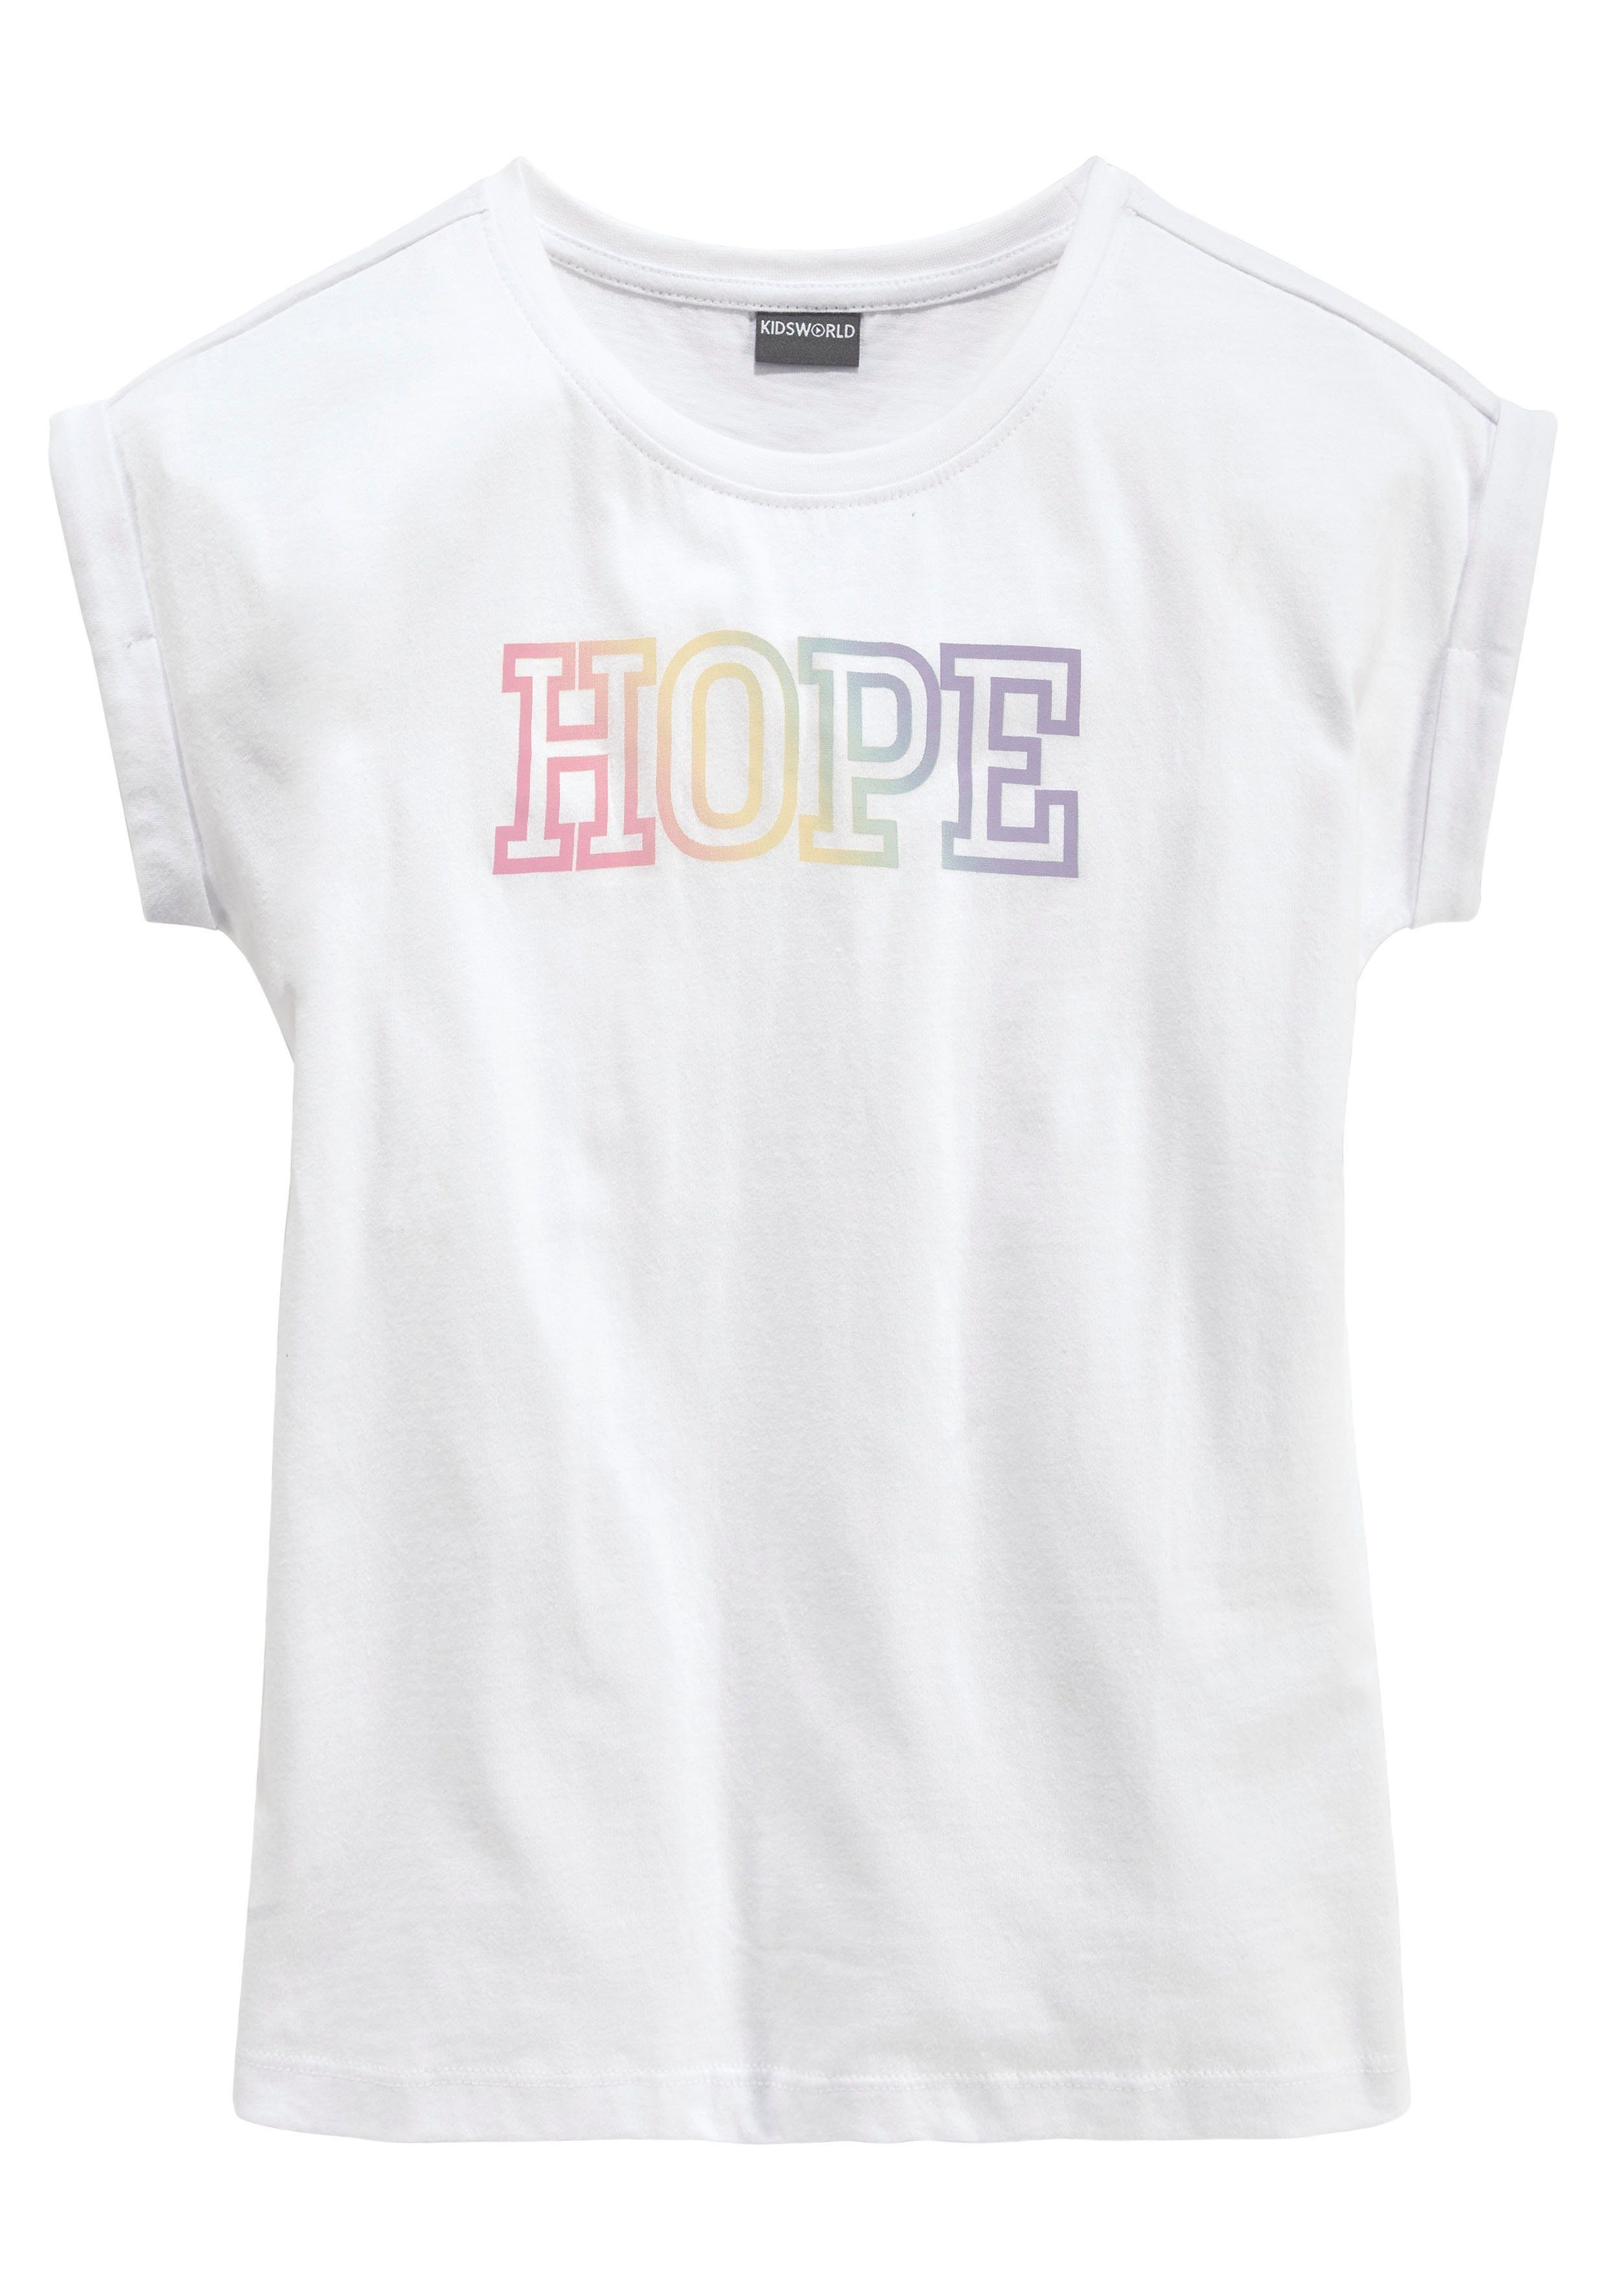 HOPE T-Shirt Statementdruck mit KIDSWORLD